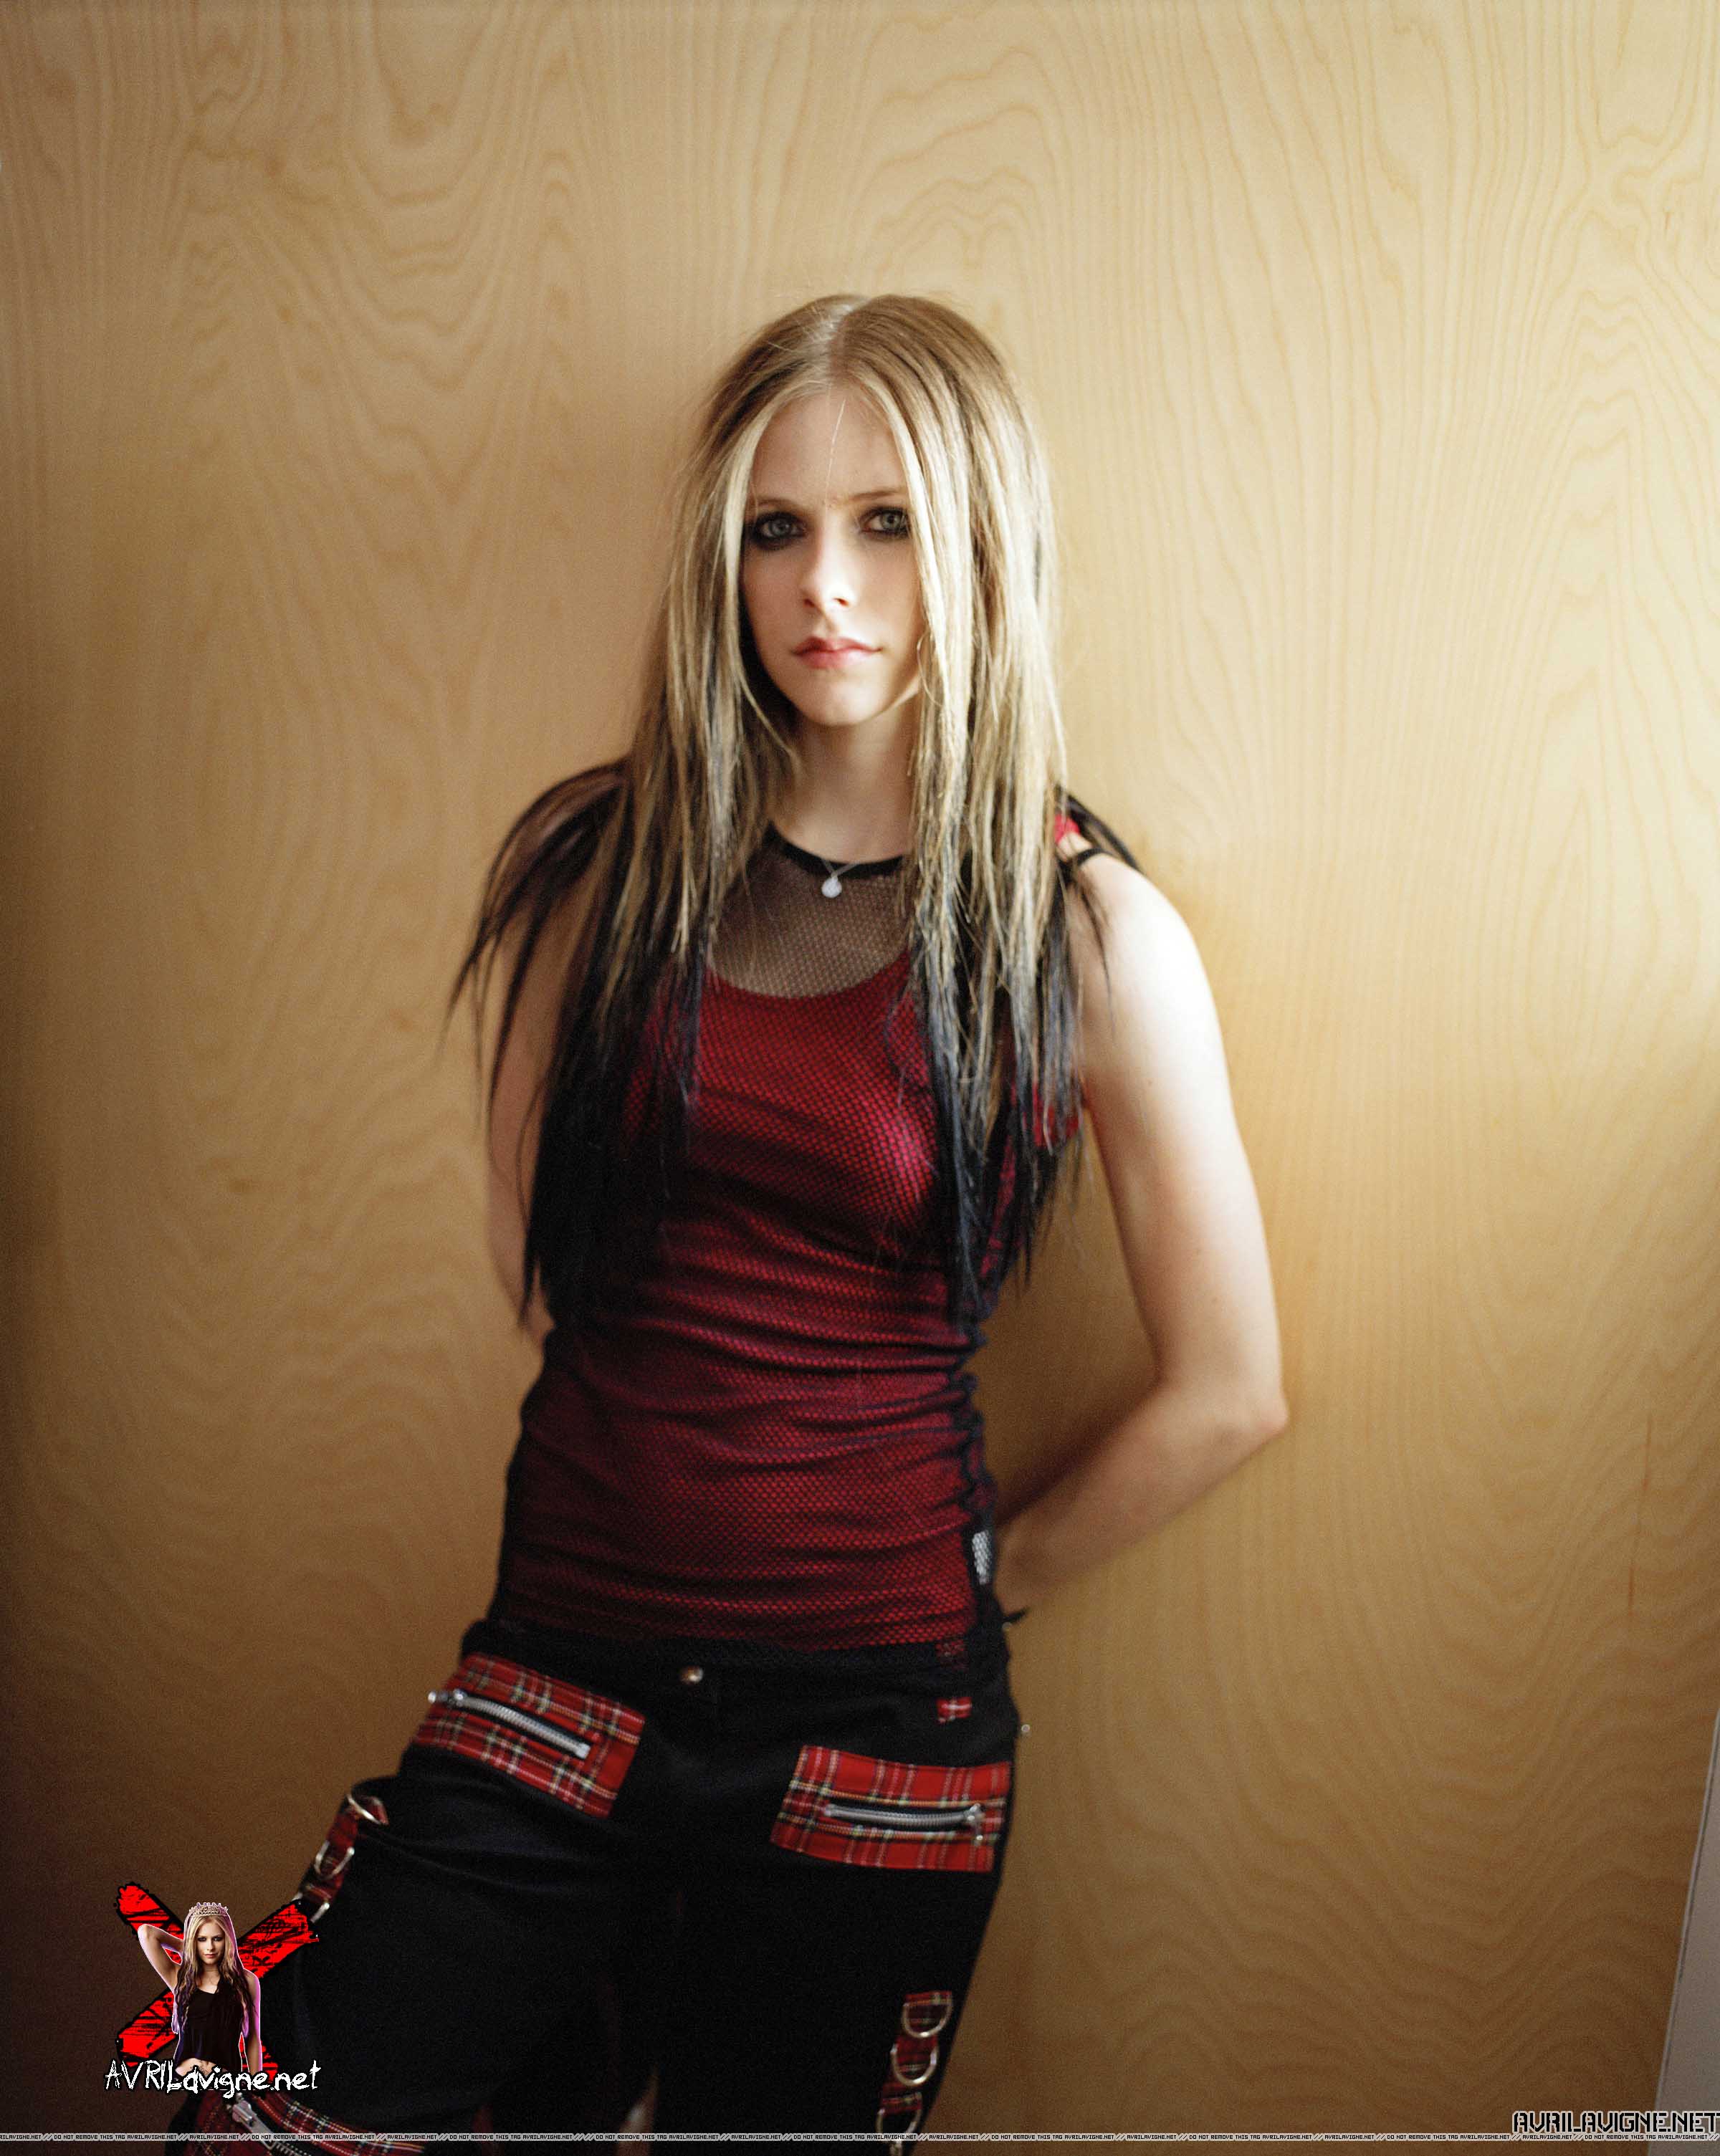 Avril Ramona Lavigne